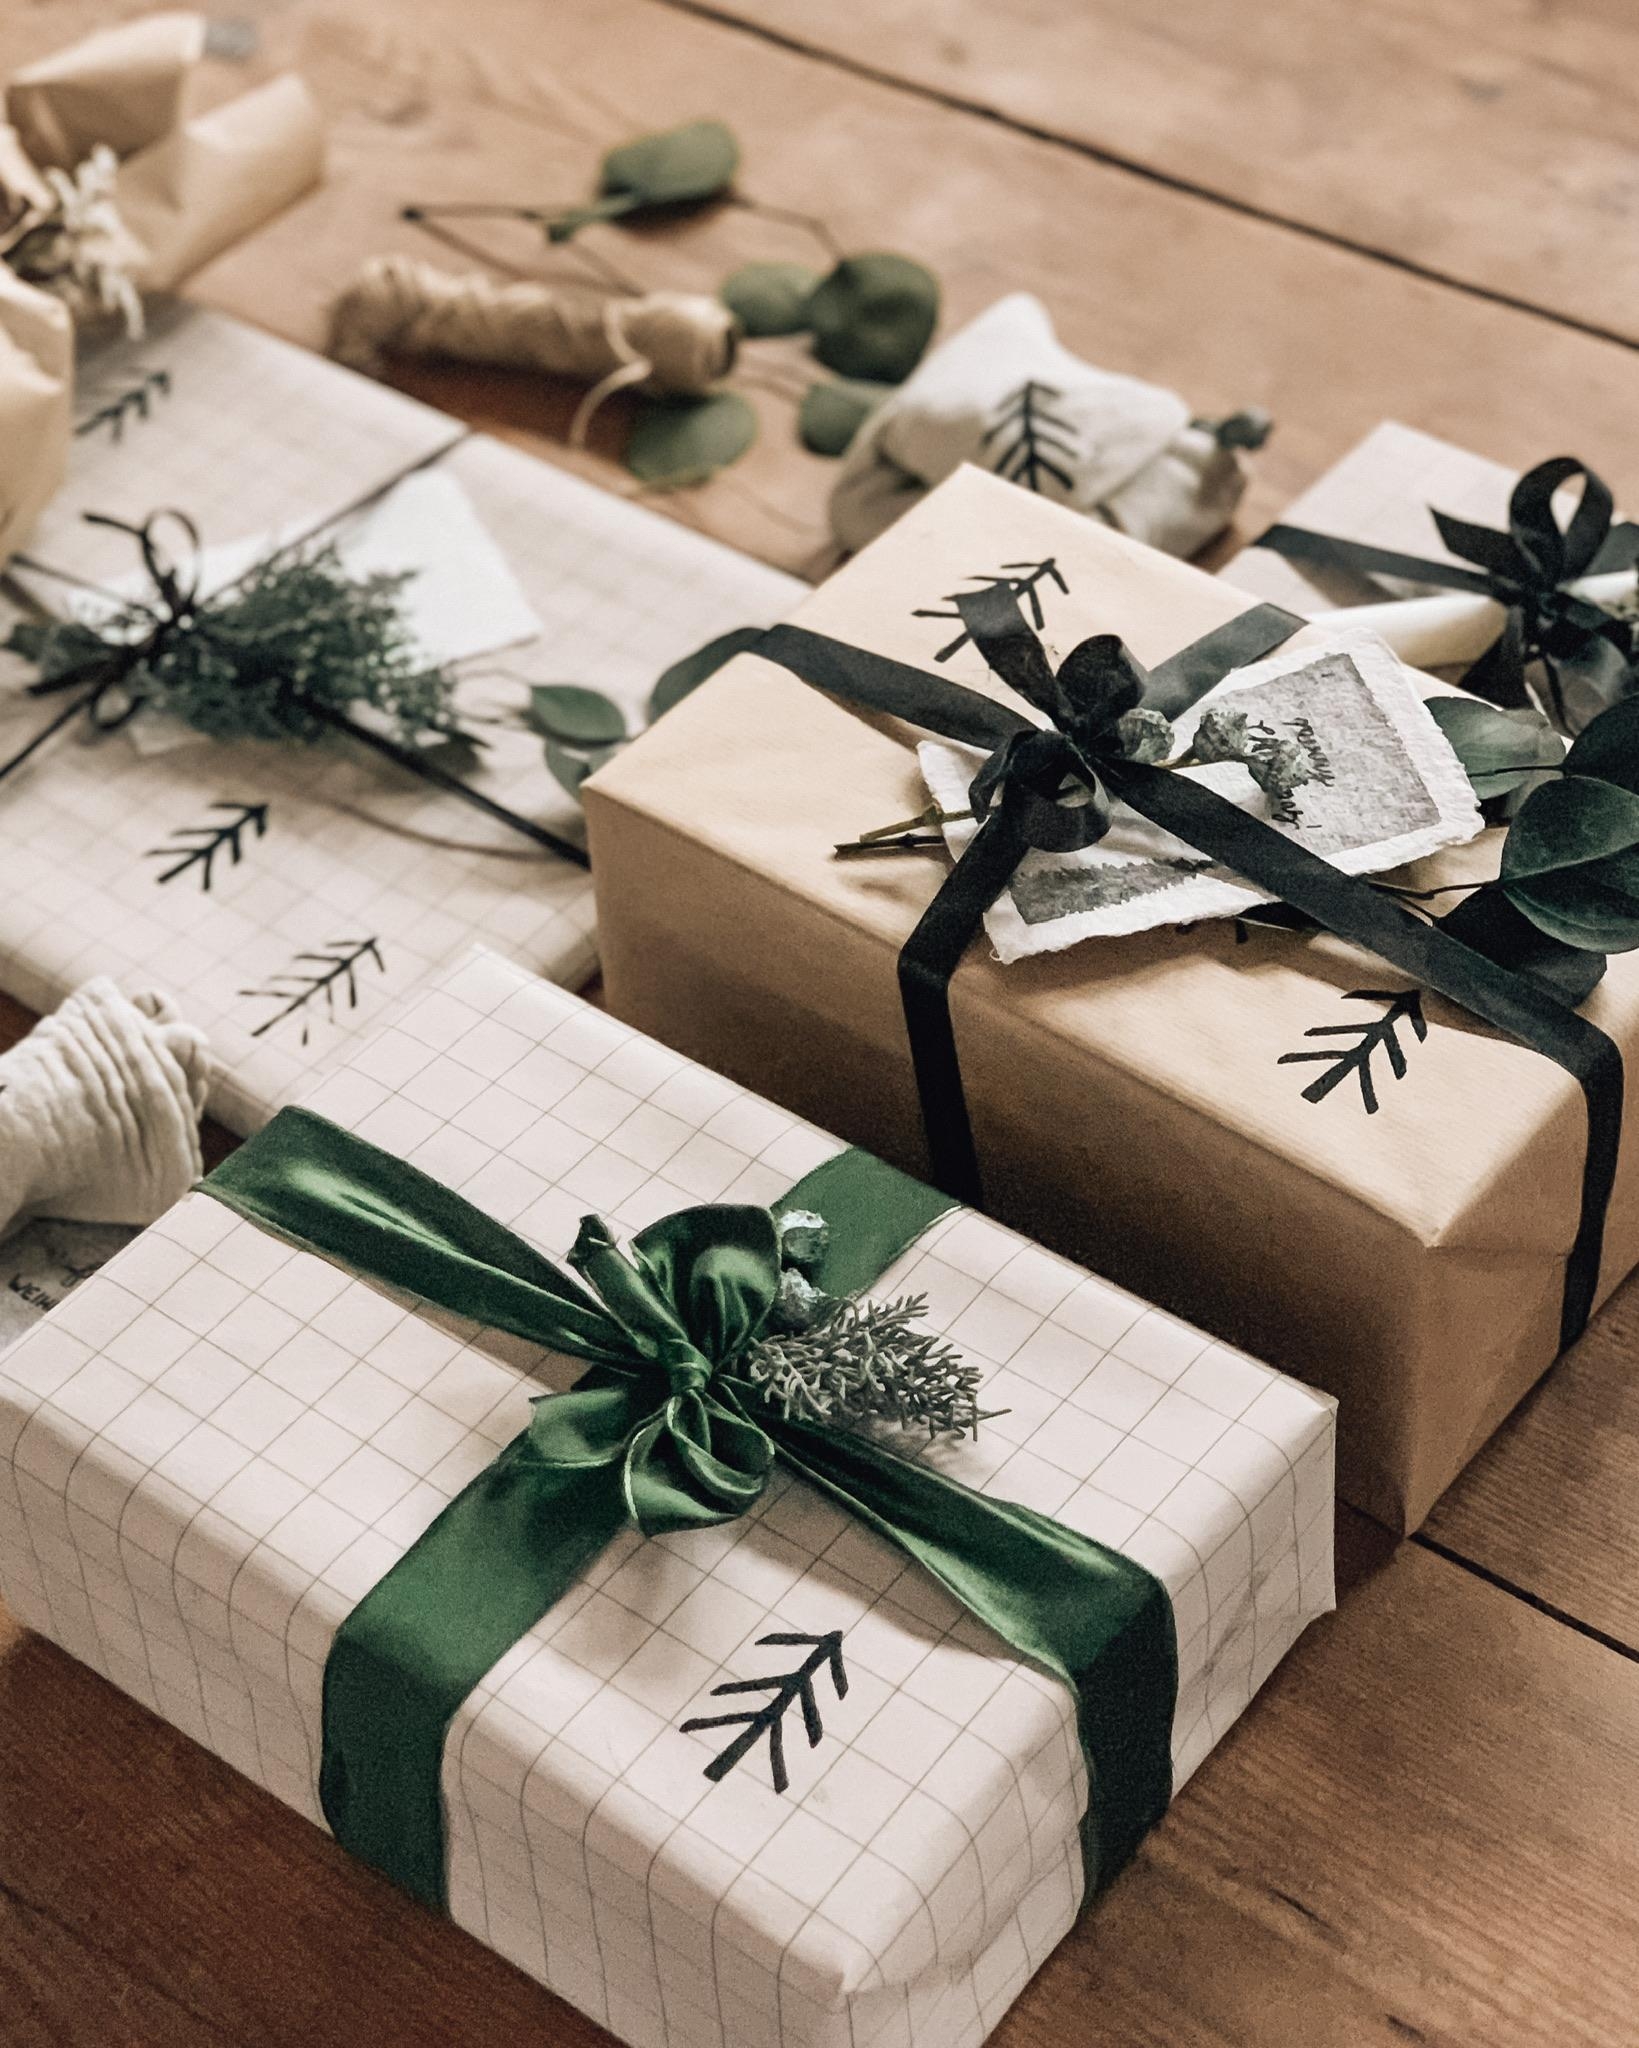 #geschenke sind eingepackt und ich kann entspannt auf #weihnachten warten! 😅😊 #giftwrapping 🎄🎄